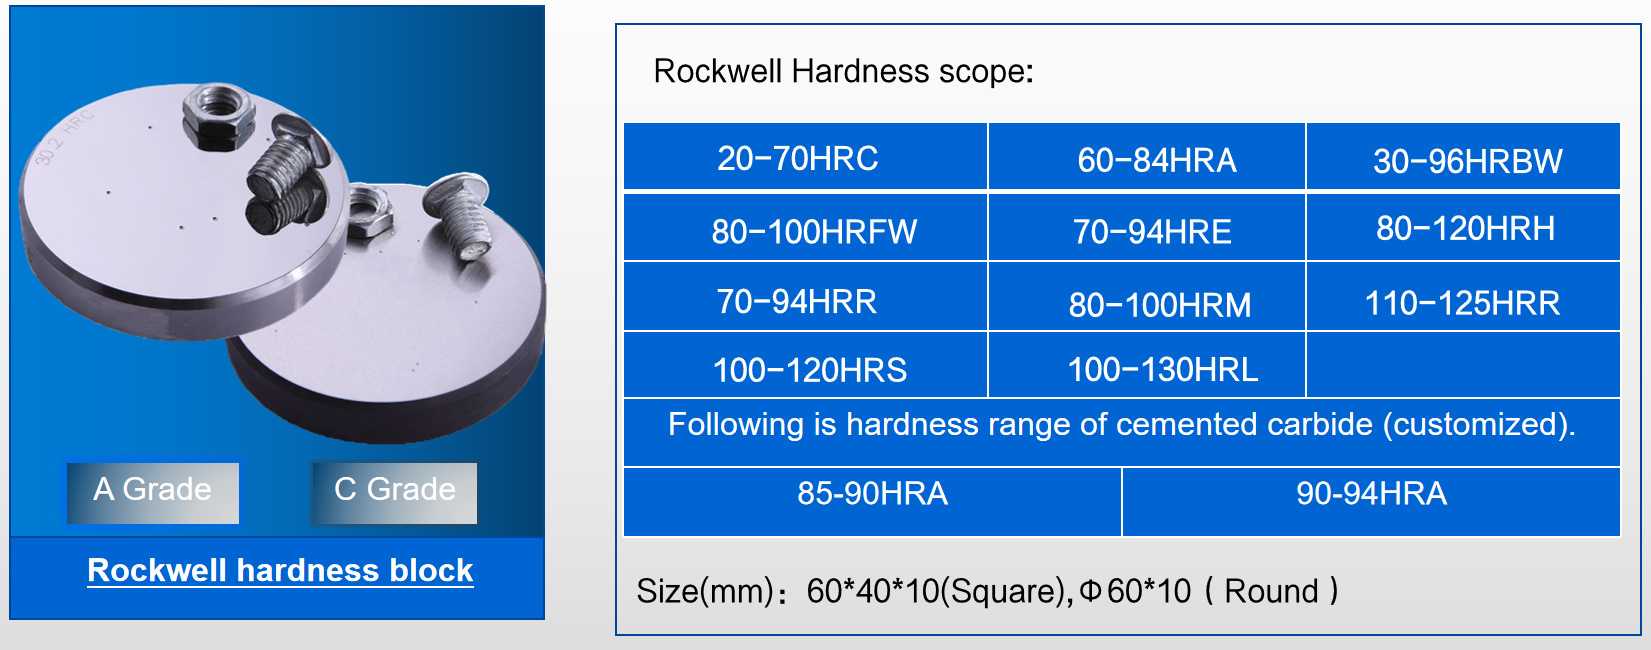 היקף קשיות Rockwell